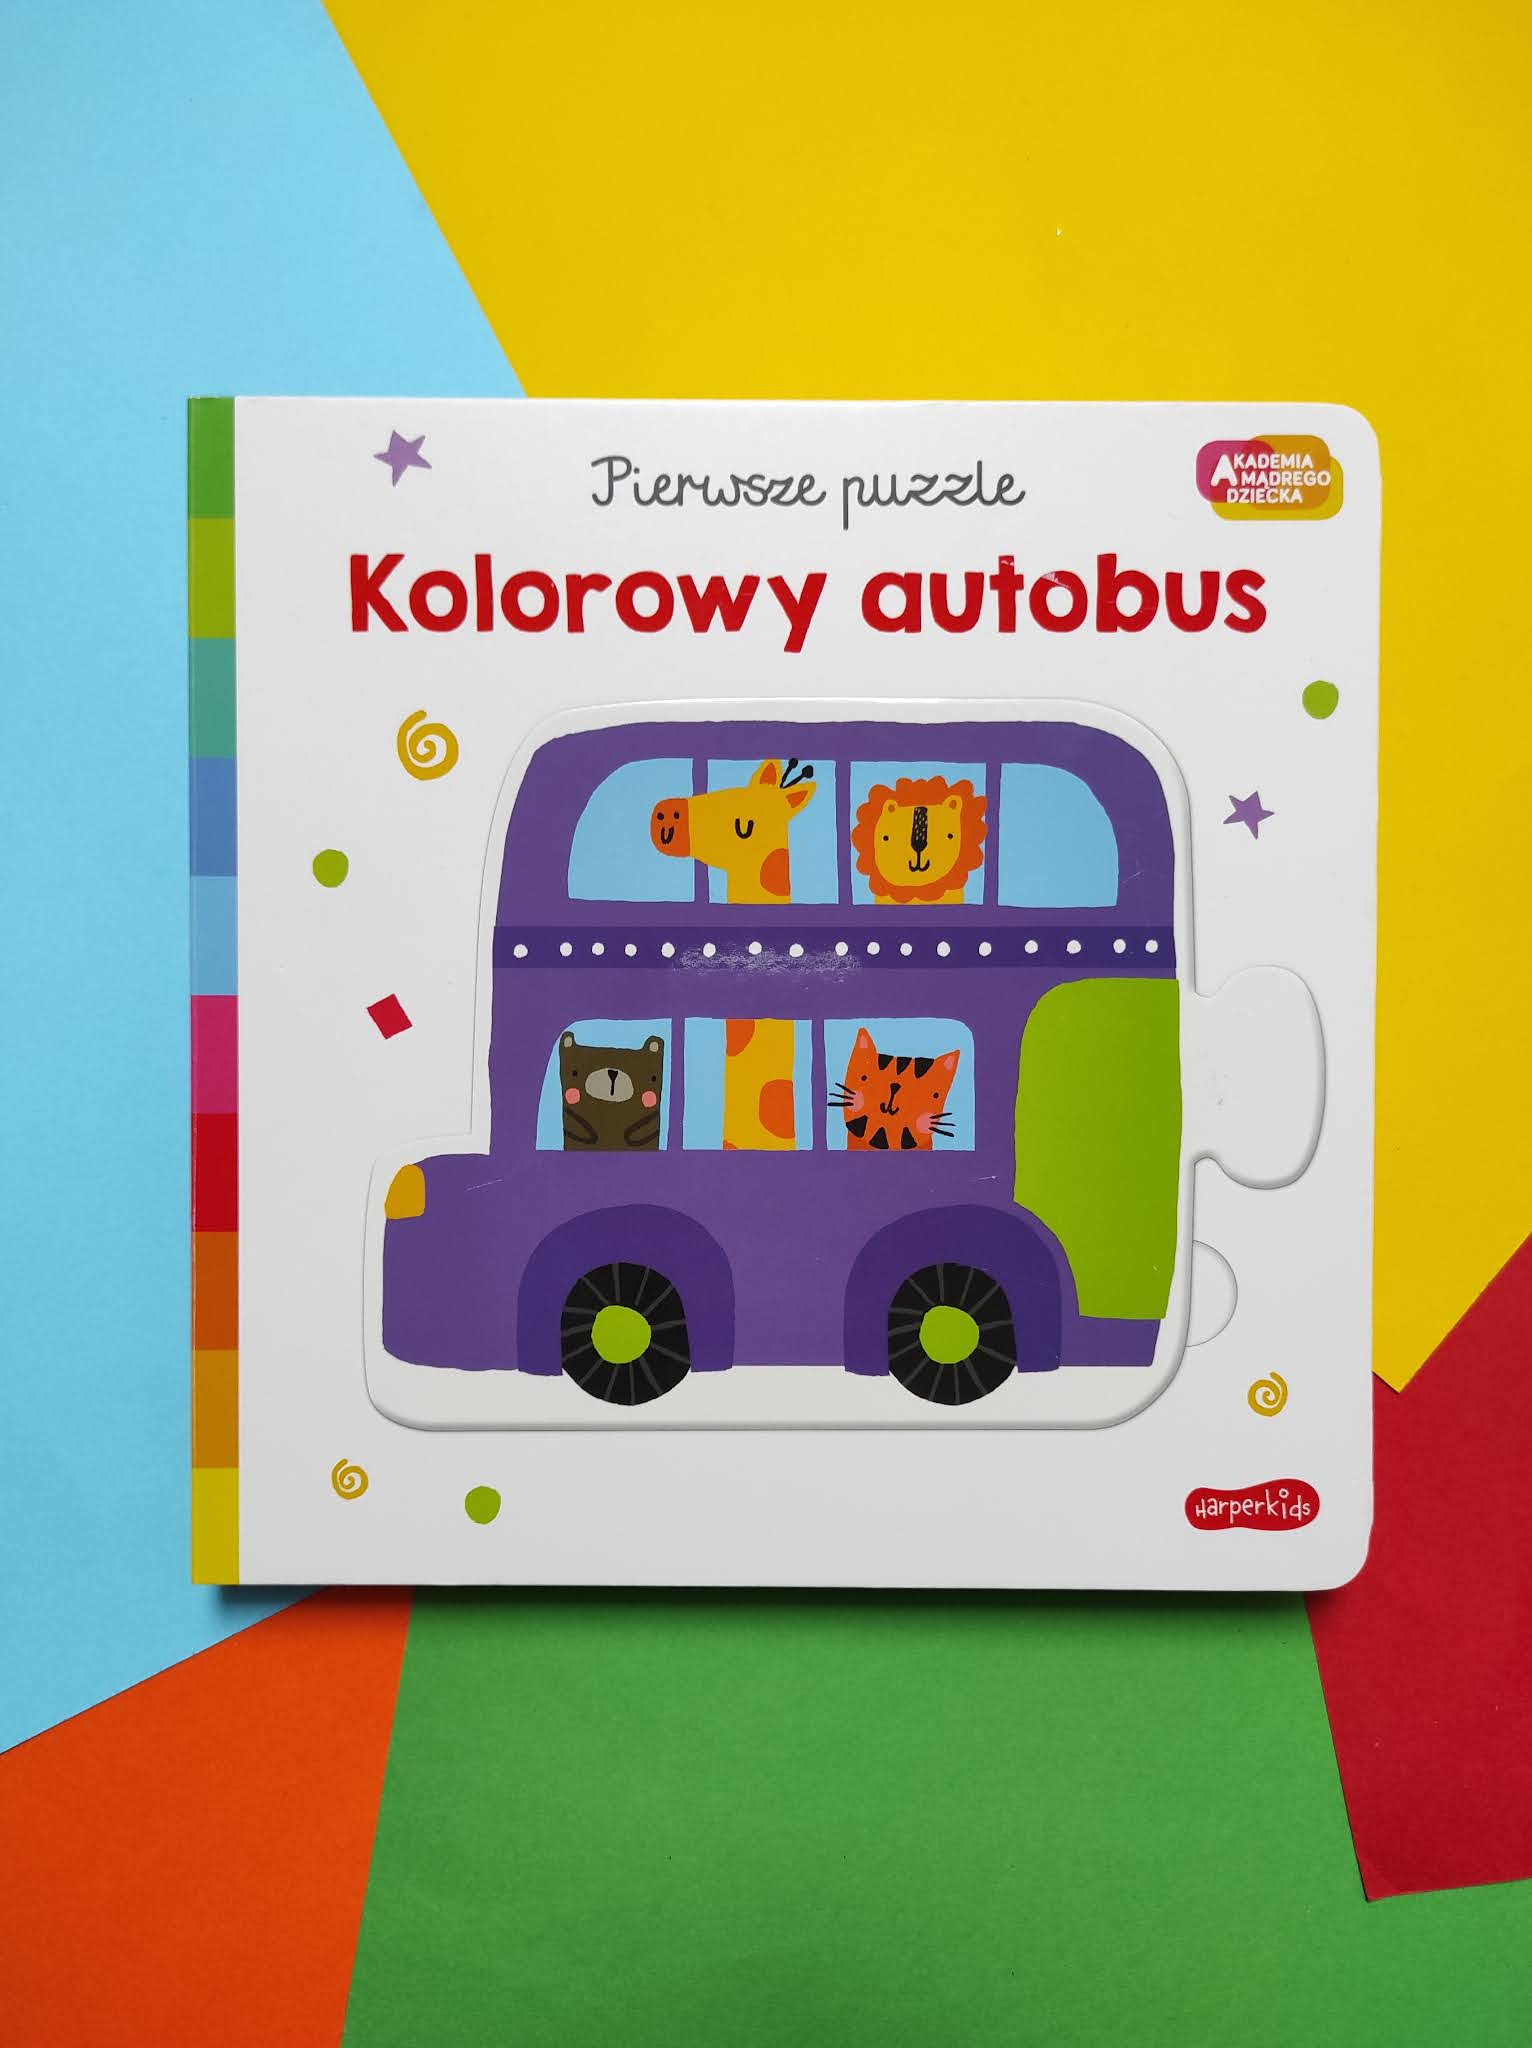 Akademia Mądrego Dziecka. Pierwsze puzzle. Kolorowy autobus.